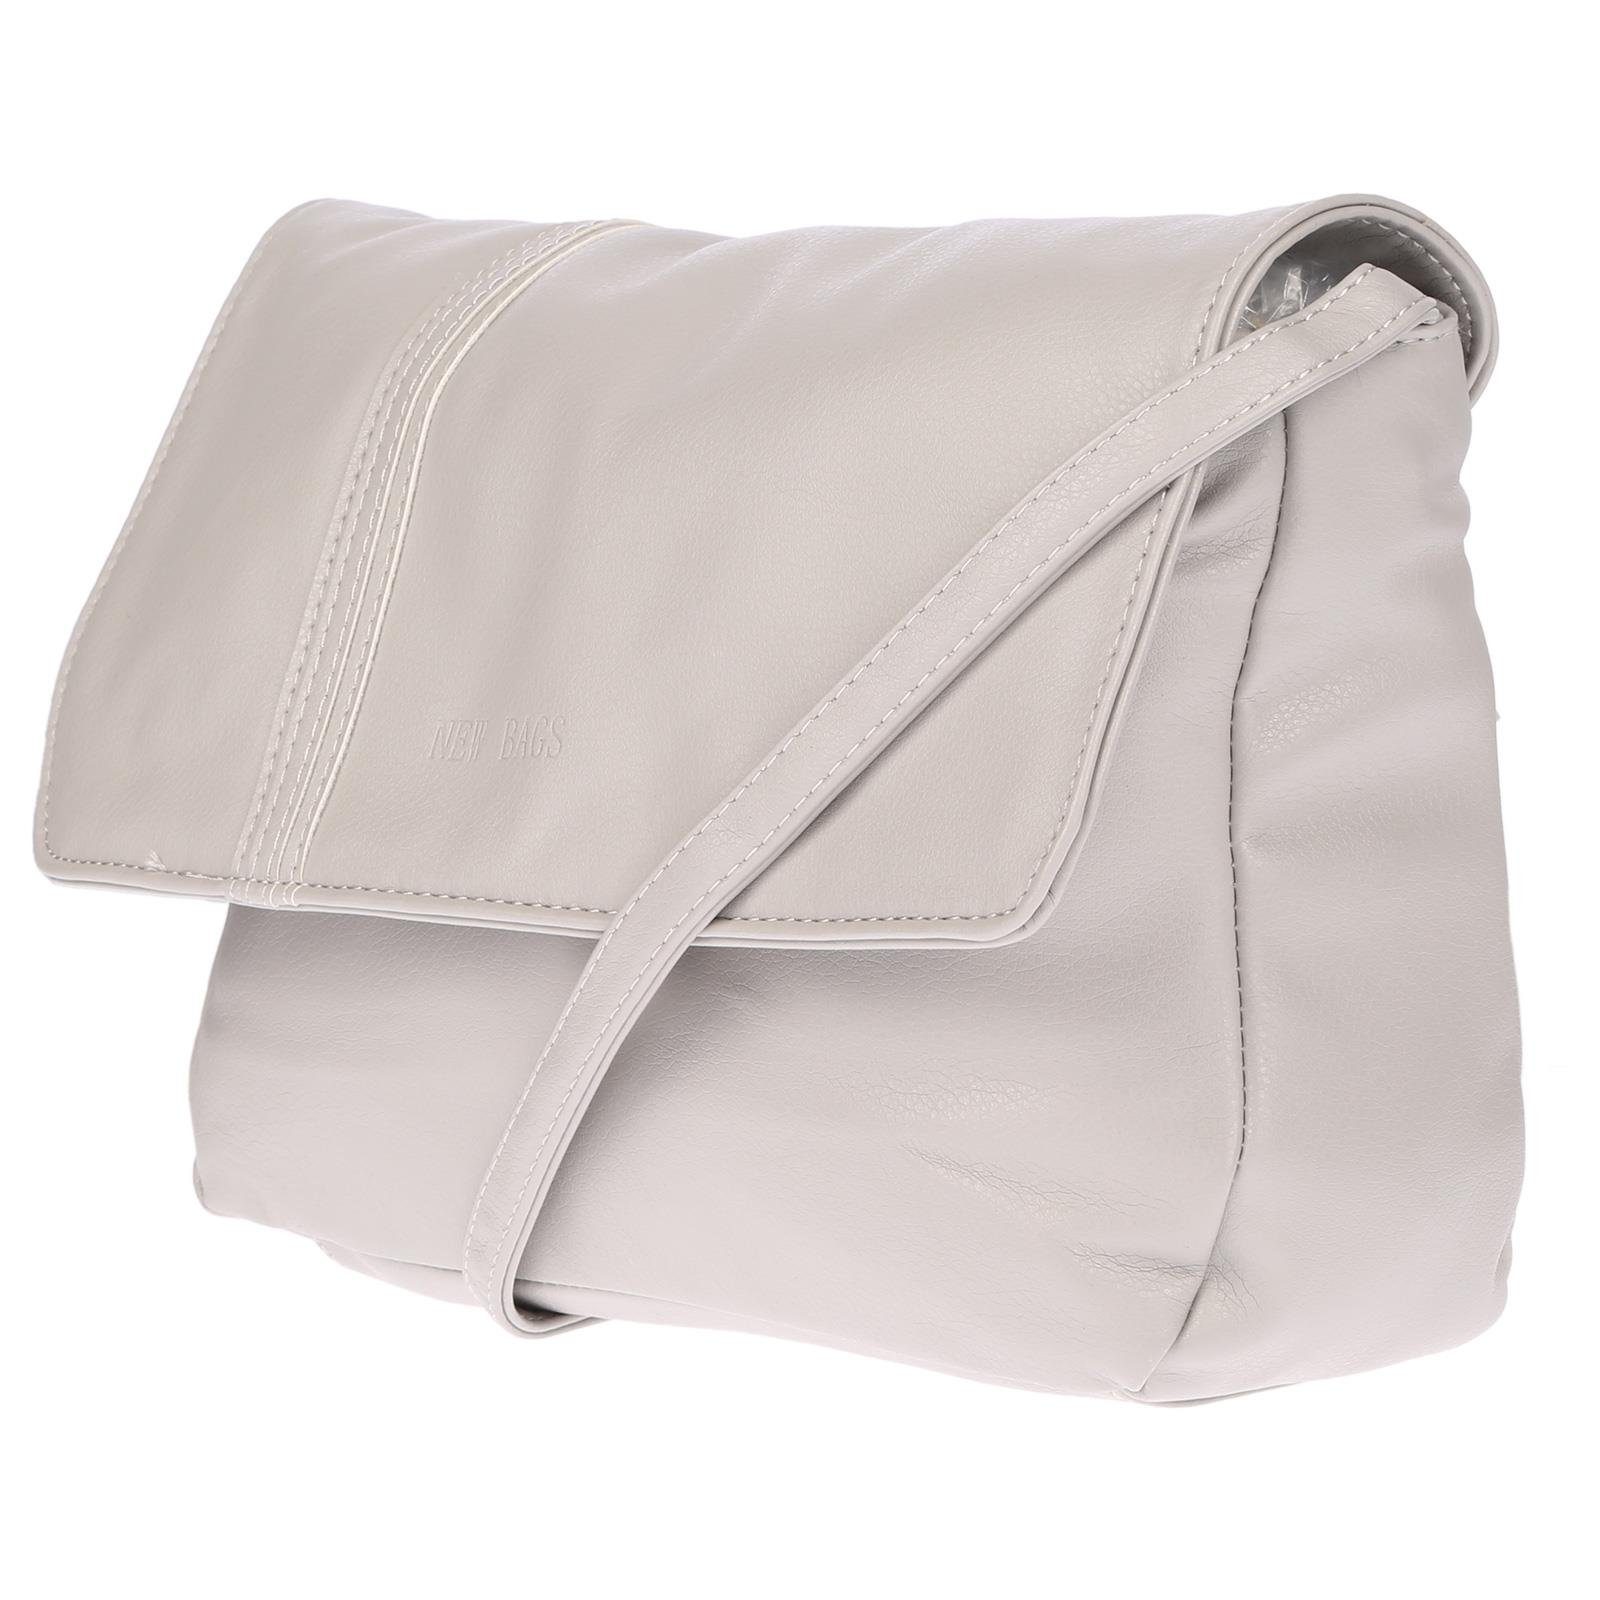 Damen Schultertasche Umhängetasche Handtasche Leder Optik Tasche Grau Crossover 